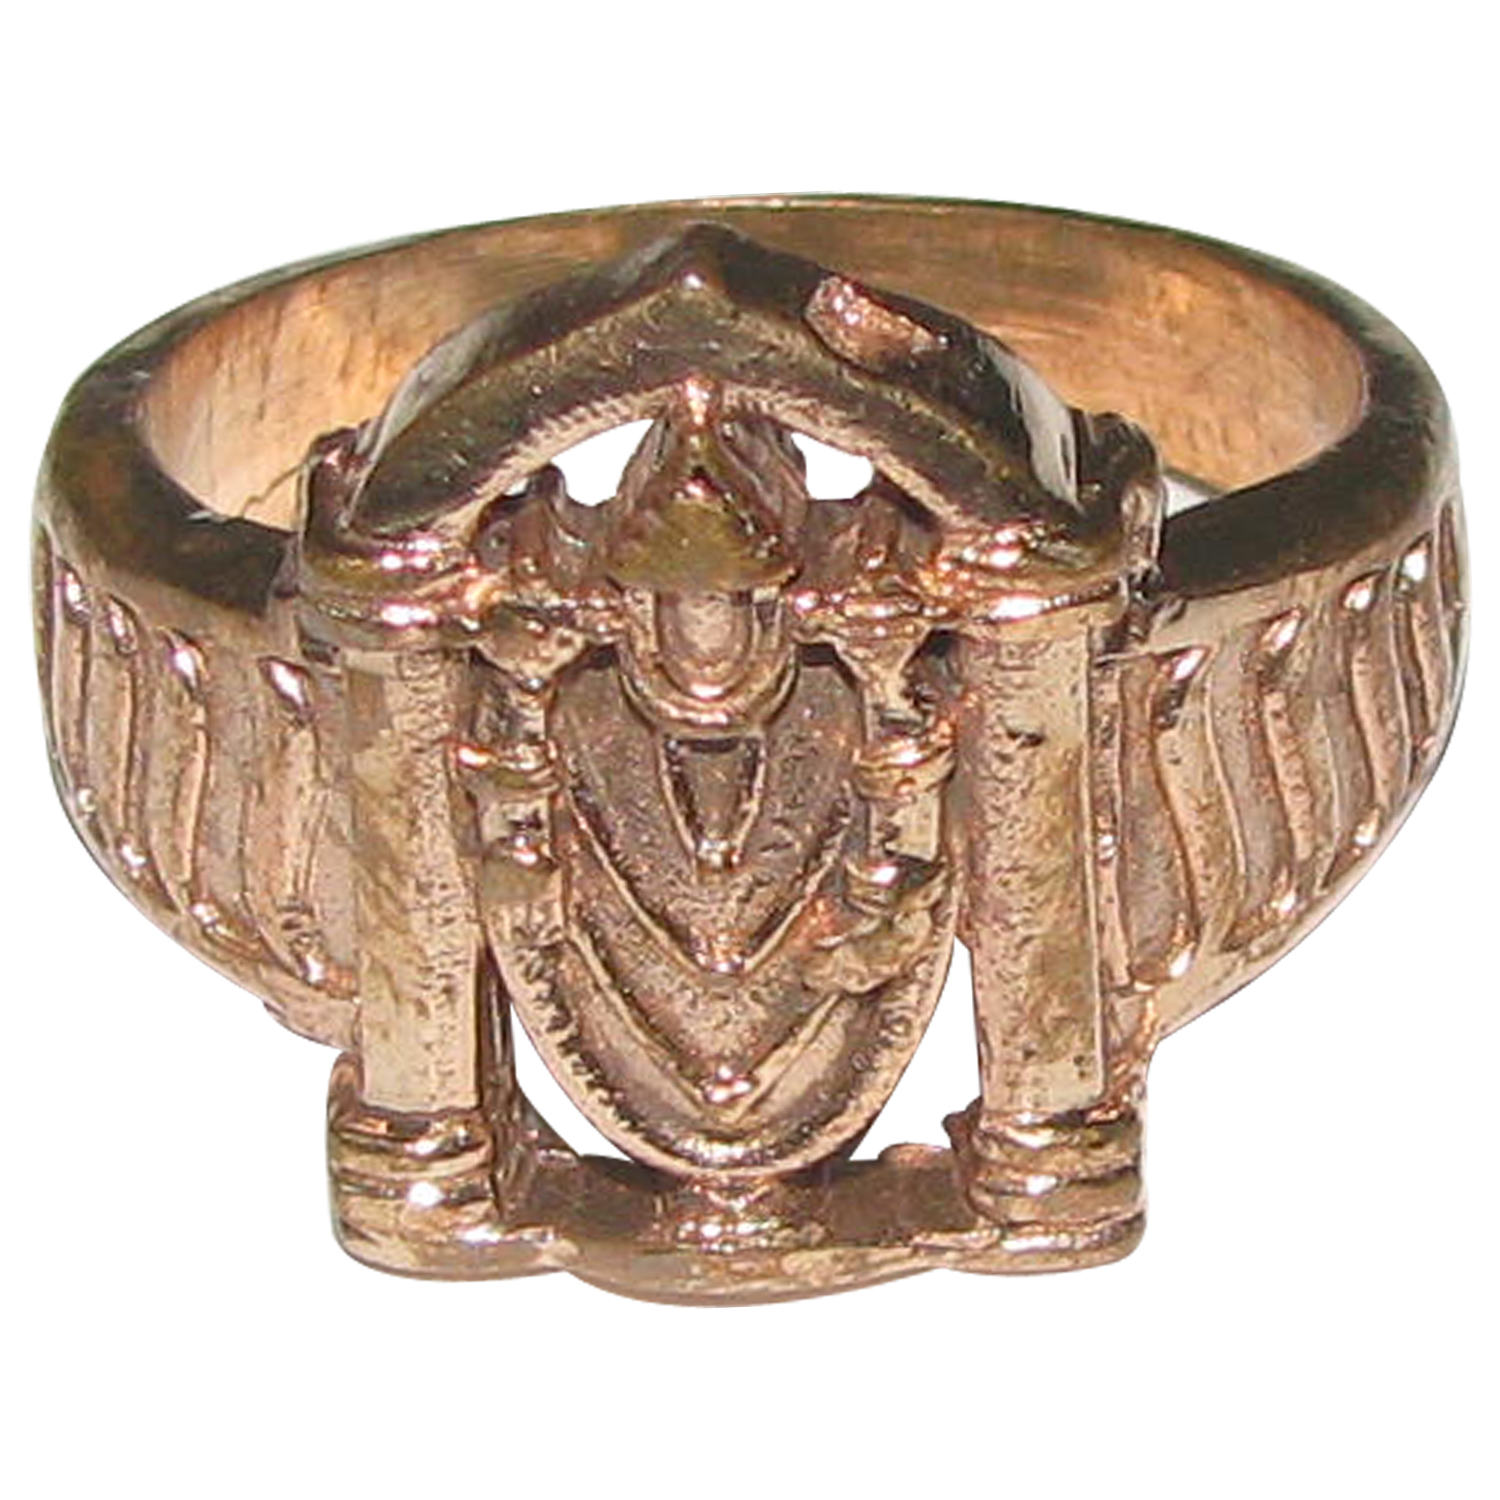 Govinda Panchalogam Ring Panchaloha Tirumala Balaji Ring 5 Metals